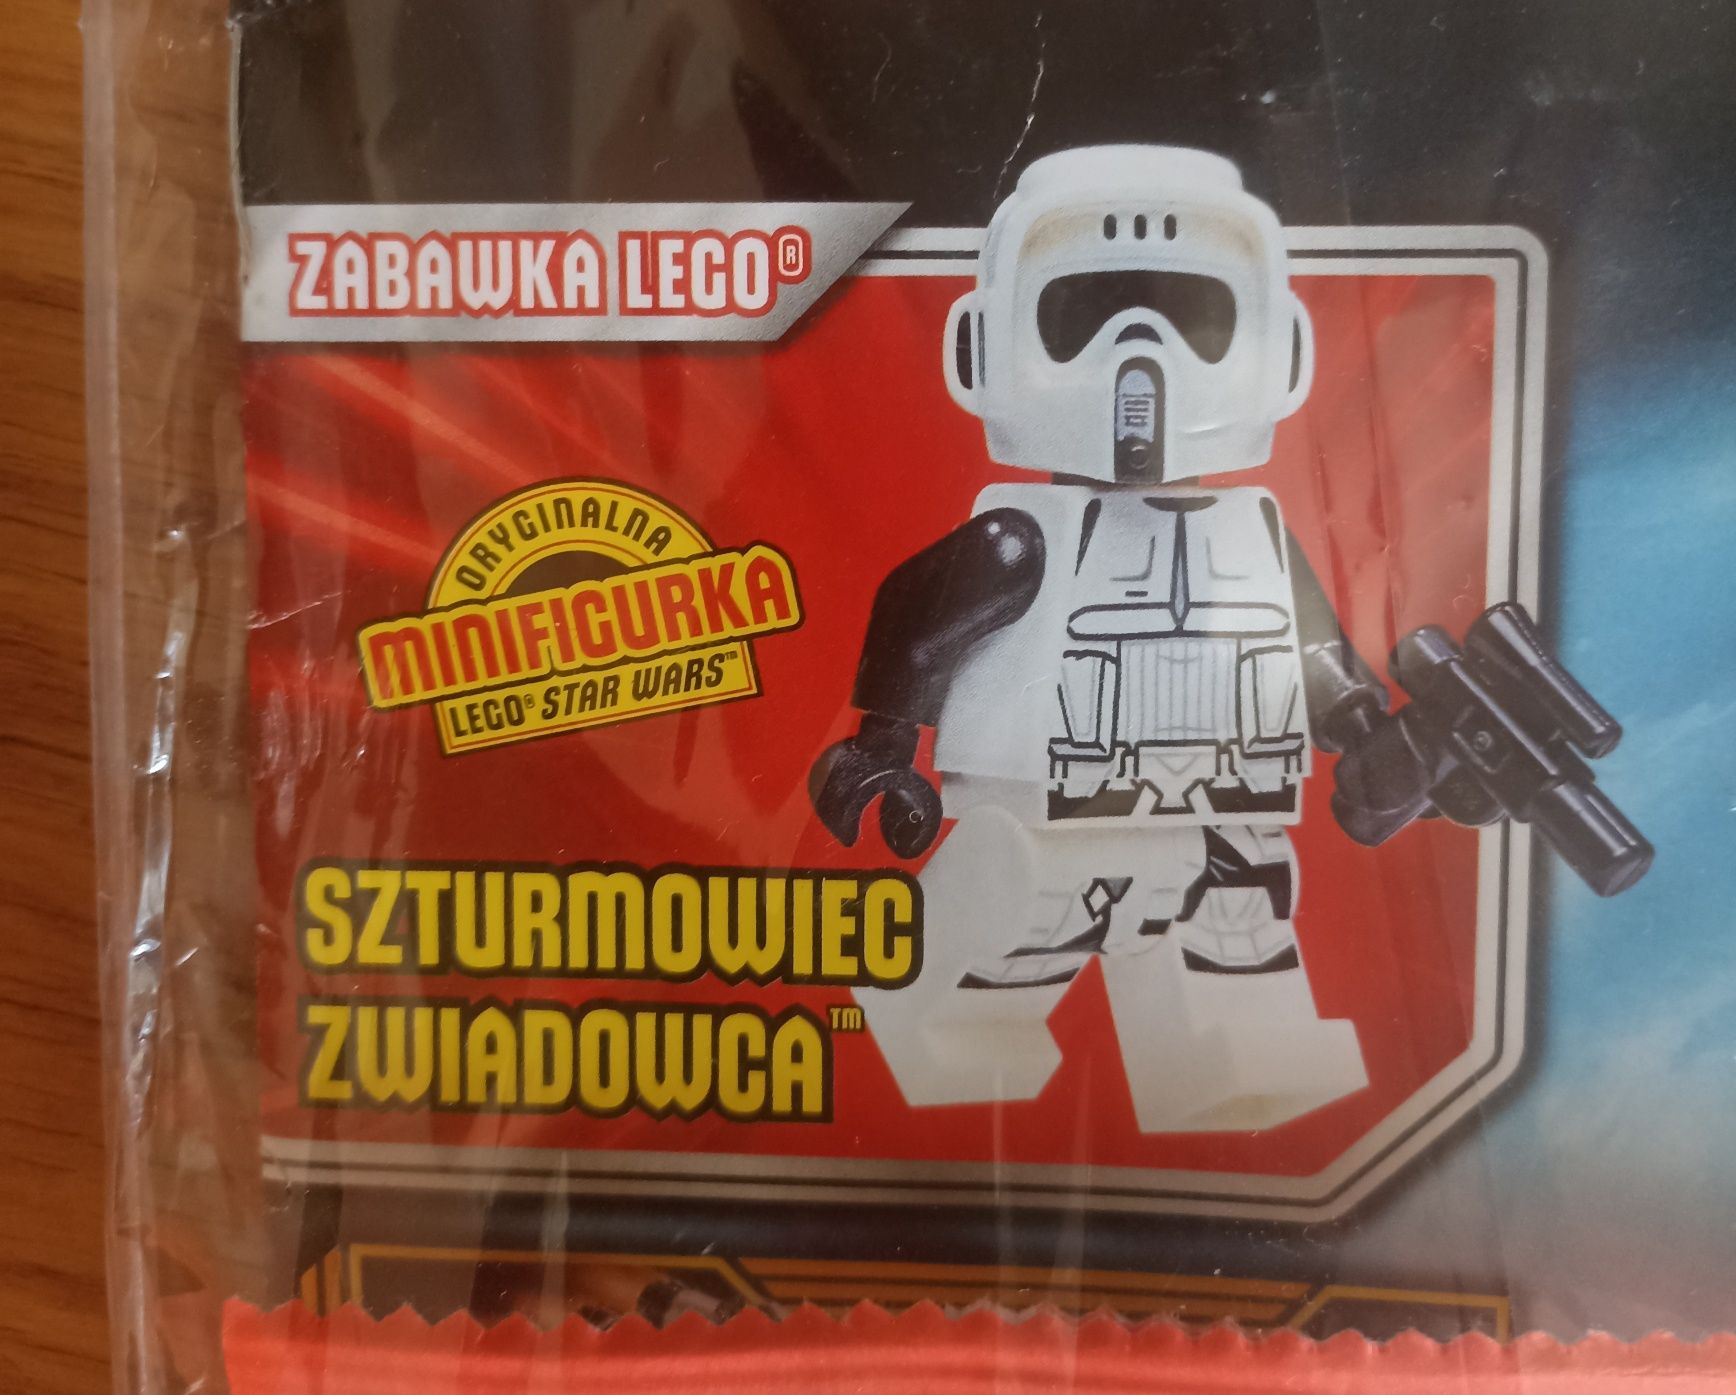 Gazeta, gazetka LEGO Star Wars, klocki szturmowiec zwiadowca